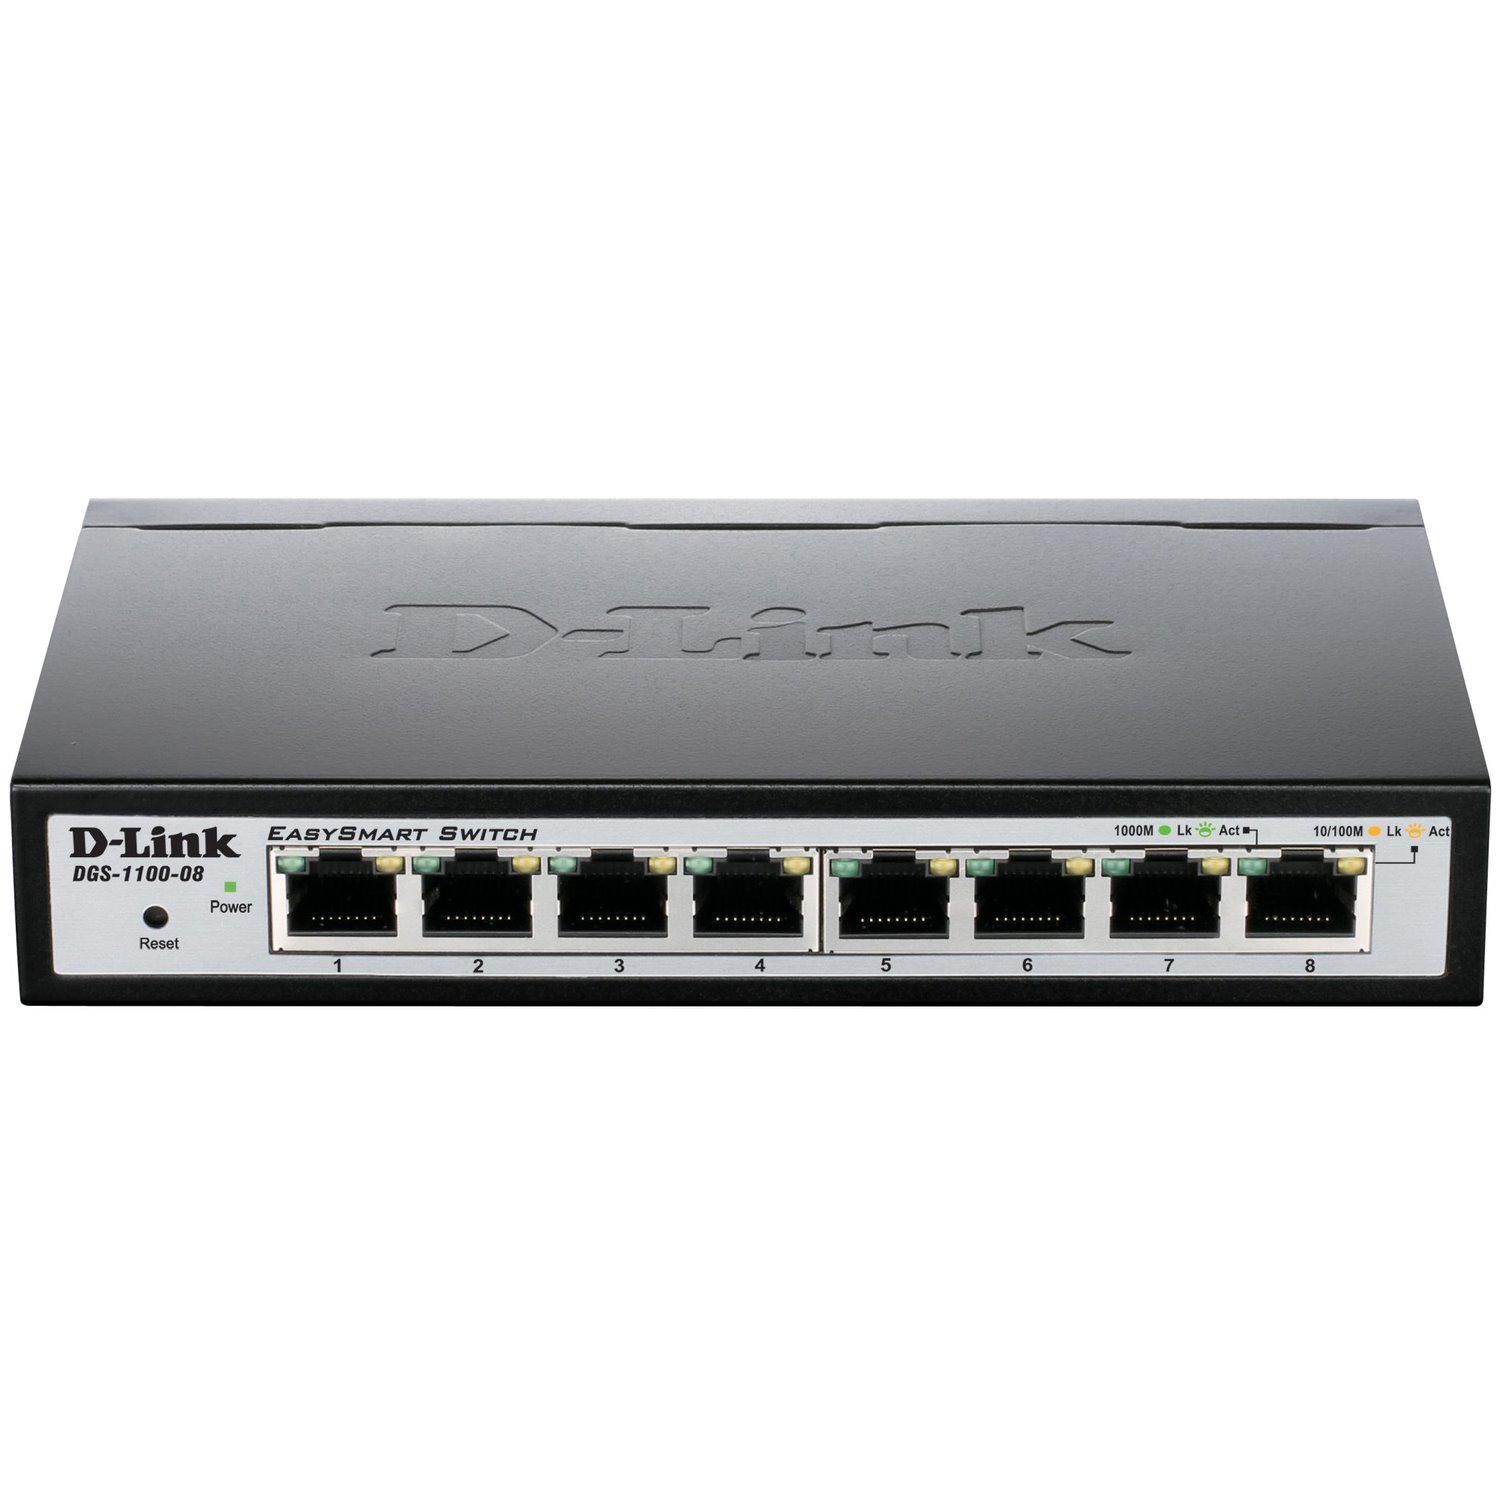 D-Link DGS-1100 DGS-1100-08 8 Ports Manageable Ethernet Switch - Gigabit Ethernet - 10/100/1000Base-T